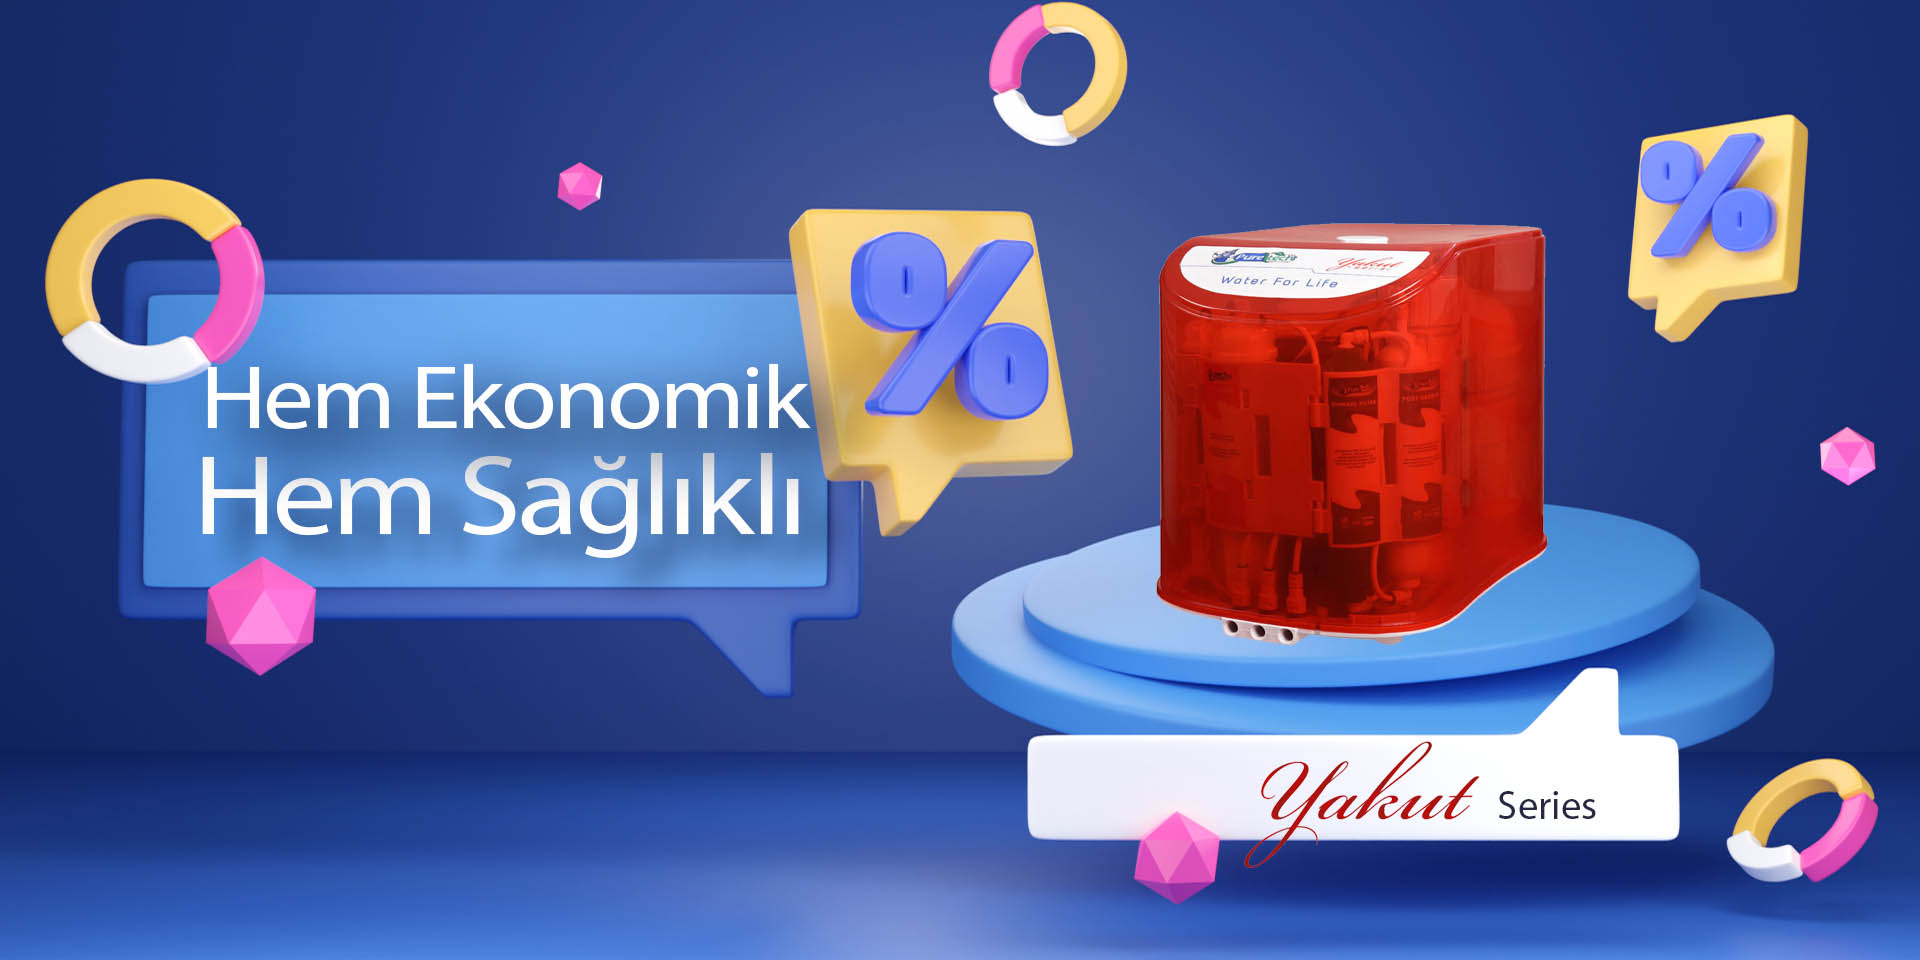 slider-banner-yakut-product